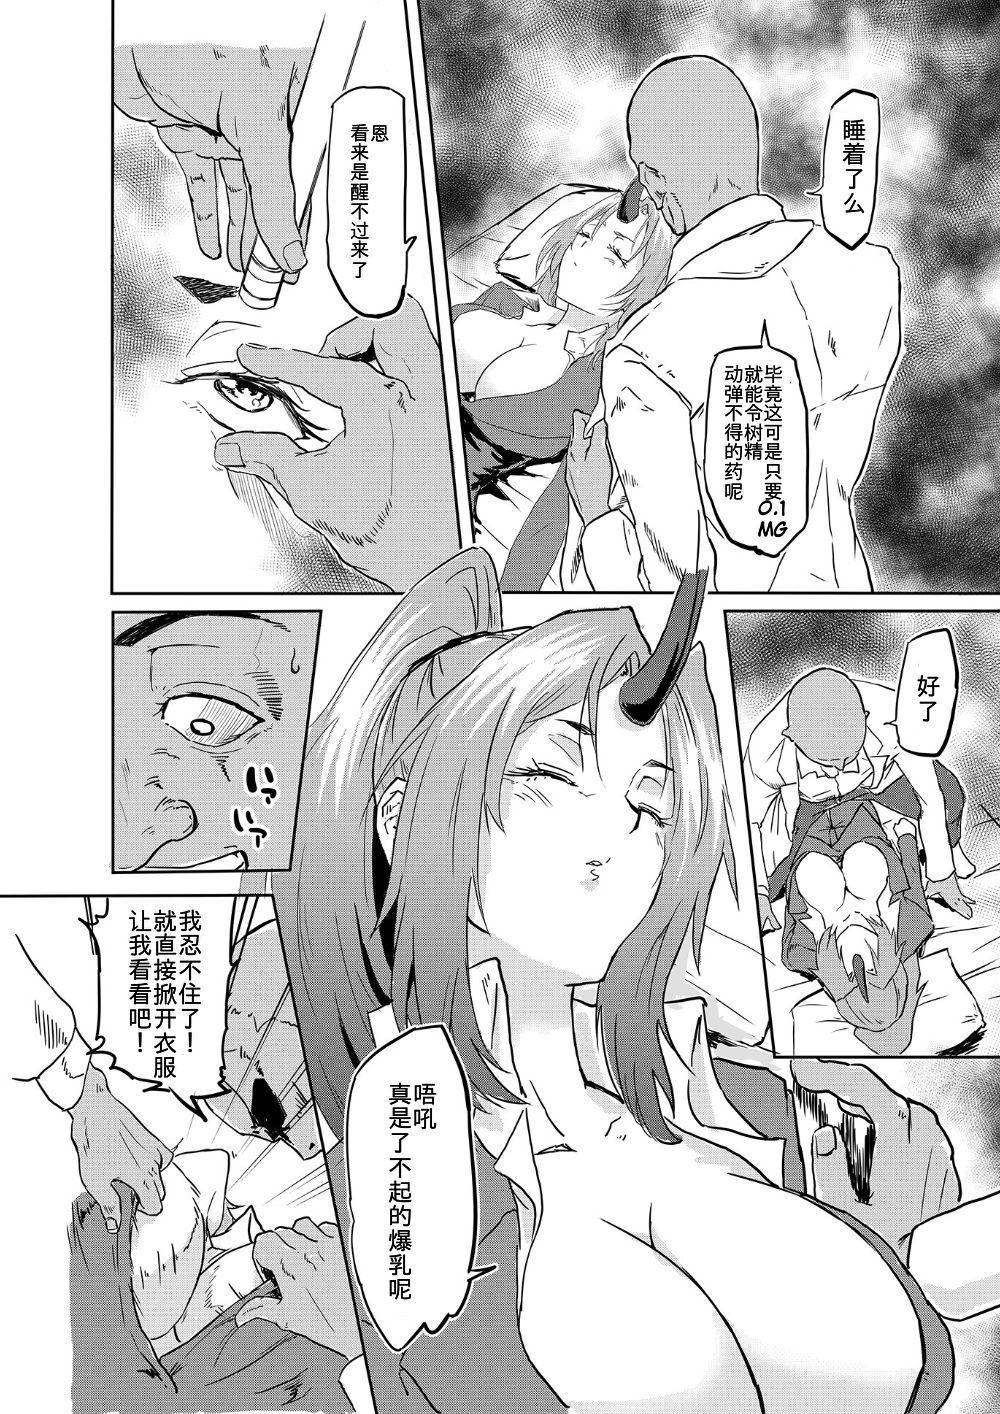 Orgasmus Bijin Kijin Hisho Suikan - Tensei shitara slime datta ken Watersports - Page 6